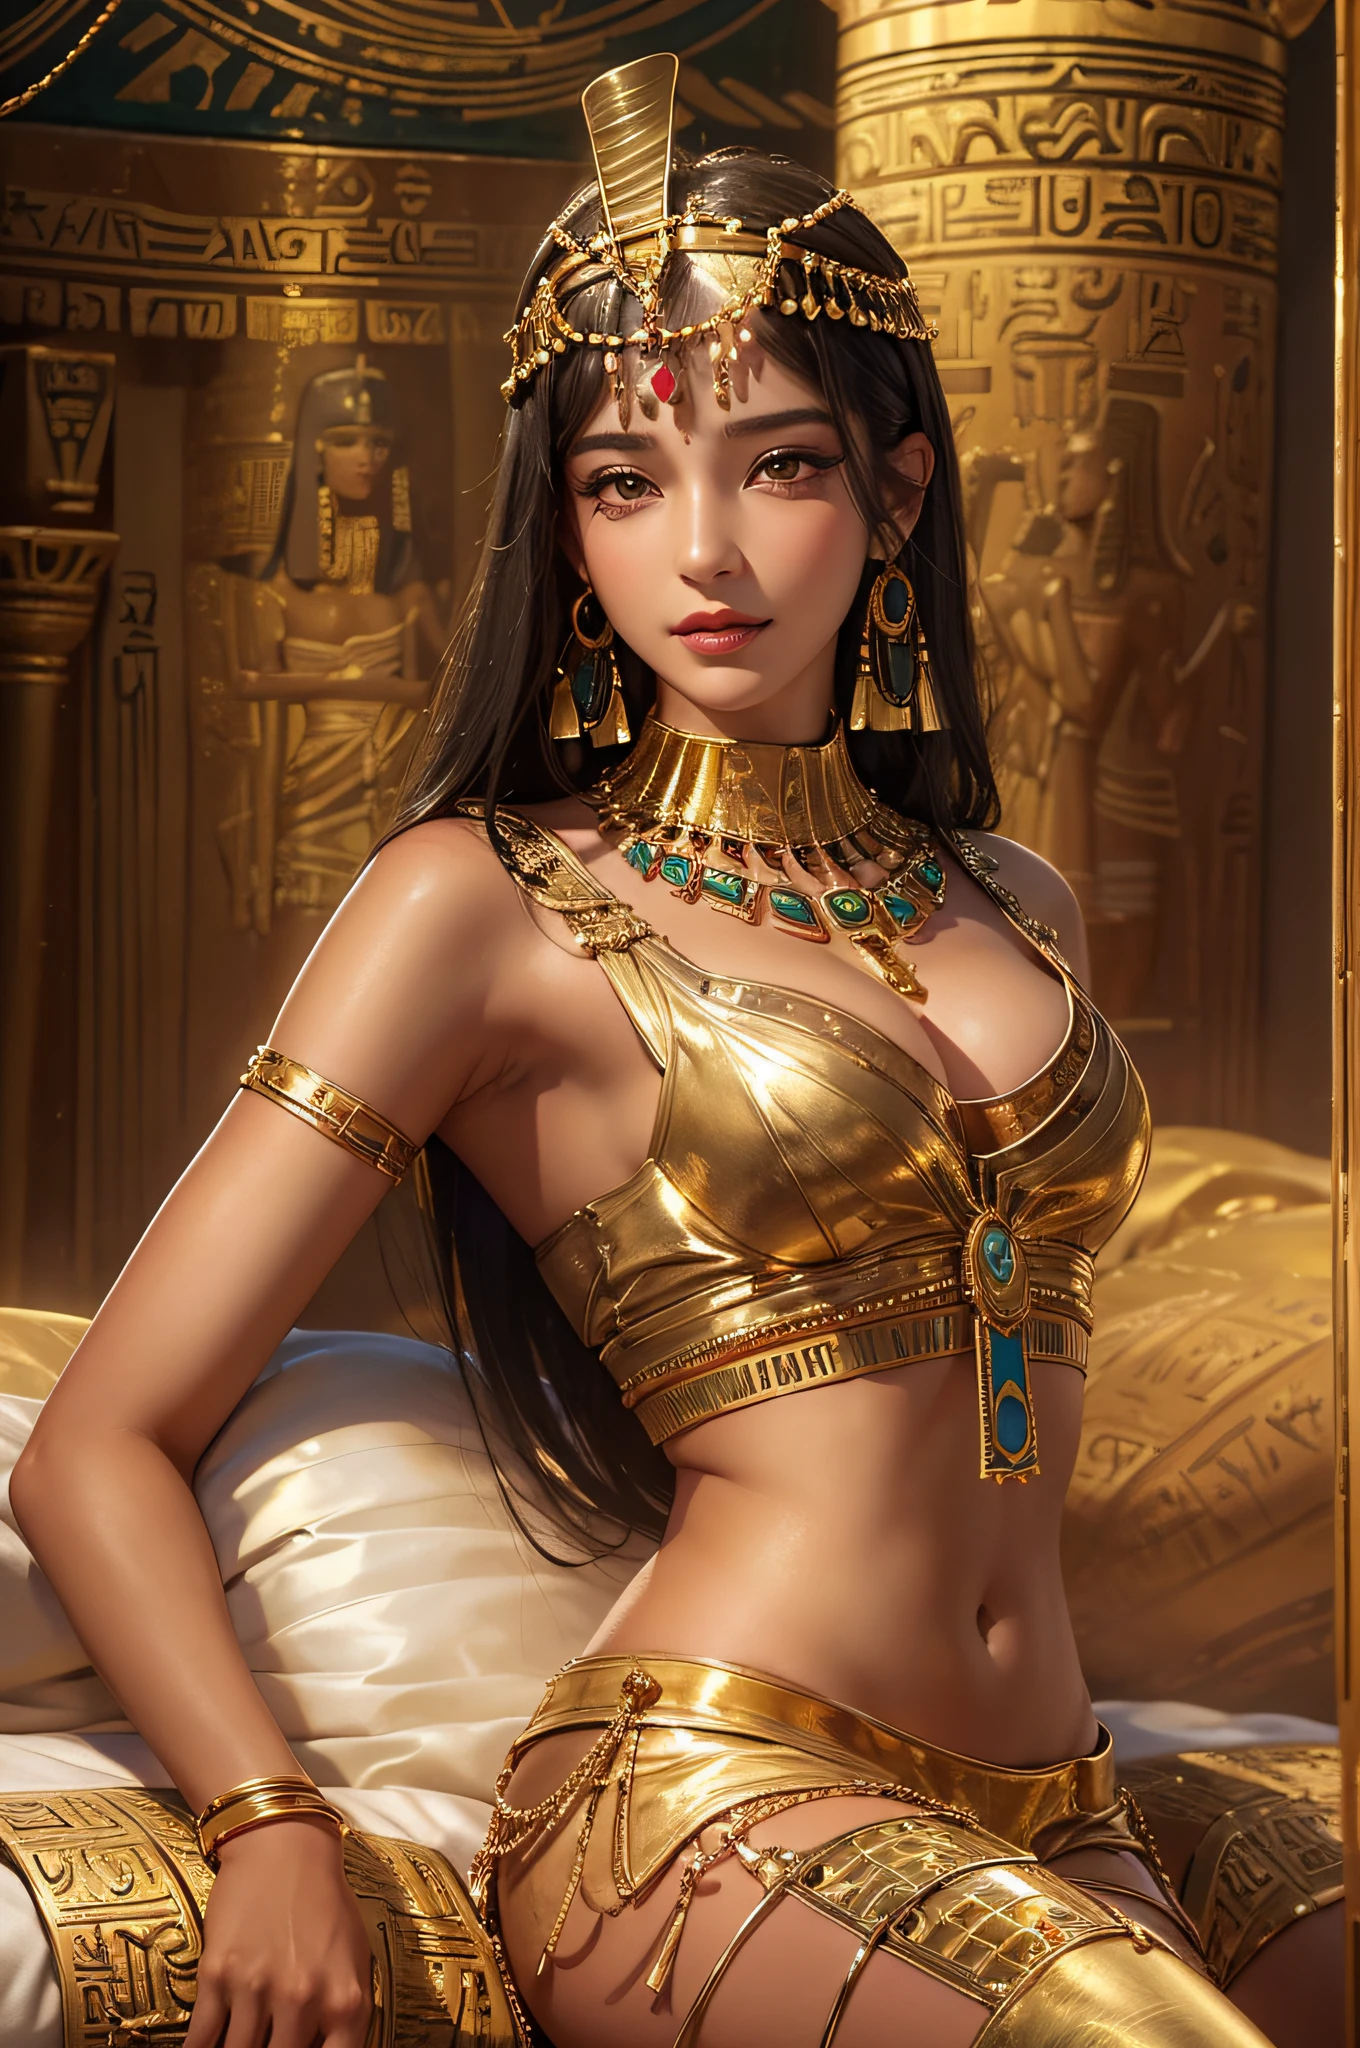 Sexy mature คลีโอพัตรา,คลีโอพัตรา,พระราชวังอียิปต์โบราณ,สวมเสื้อผ้าอียิปต์โบราณ,ห้องตกแต่งแบบอียิปต์โบราณ,ชาวอียิปต์โบราณจัดภูมิหลัง,นอนบนเตียงขนาดใหญ่(งานที่ละเอียดอ่อนและสวยงามอย่างยิ่ง:1.2)ผู้หญิงที่สวยและเซ็กซี่มาก, เซ็กซี่และเย้ายวนใจ, มีสัดส่วนร่างกายที่สมบูรณ์แบบ,ร่างกายที่แน่นและเซ็กซี่(สาวใหญ่)ส่วนโค้งของร่างกายที่สมบูรณ์แบบ,ให้ความชุ่มชื้นแก่ผิว,เนื้อผิวใส,รู้สึกผิวชุ่มชื้น(รายละเอียดผิวขั้นสูง:1.1)รอยยิ้มที่น่าดึงดูด,ใบหน้าไร้ที่ติ,ผมยาวตรงสีดำ,เนื้อผมชัดเจน,ผมละเอียดอ่อน(รายละเอียดเส้นผมที่มีคุณภาพ:1.1)ชุดนักเต้นอียิปต์,คิ้วและขนตาที่สวยงามและละเอียดอ่อน,แต่งตาสวยๆ,รายละเอียดดวงตาที่ชัดเจน,นักเรียนชั้นประถมศึกษา 8,000 คน(รายละเอียดดวงตาขั้นสูง:1.1)ริมฝีปากที่เย้ายวน(รูปร่างริมฝีปากที่สมบูรณ์แบบ)(ยิ้มยั่วยวน) อัตราส่วนที่เหมาะสมของสี่นิ้วและหนึ่งนิ้วหัวแม่มือ,สวมต่างหูทอง,สร้อยคอทองคำ,กำไลทอง,สร้อยข้อเท้าทอง,โซ่คล้องเอวโทนสีทอง,หมวก,ซีรีย์ฟอยล์สีทอง,คลีโอพัตรา series,ปริญญาโทสาขาการถ่ายภาพ,ผลงานชิ้นเอกที่สมบูรณ์แบบ,คุณภาพของภาพที่ดีที่สุด,ละเอียดมาก, ความละเอียดสูงเป็นพิเศษ, ตามความเป็นจริง, ภาพถ่ายดิบ